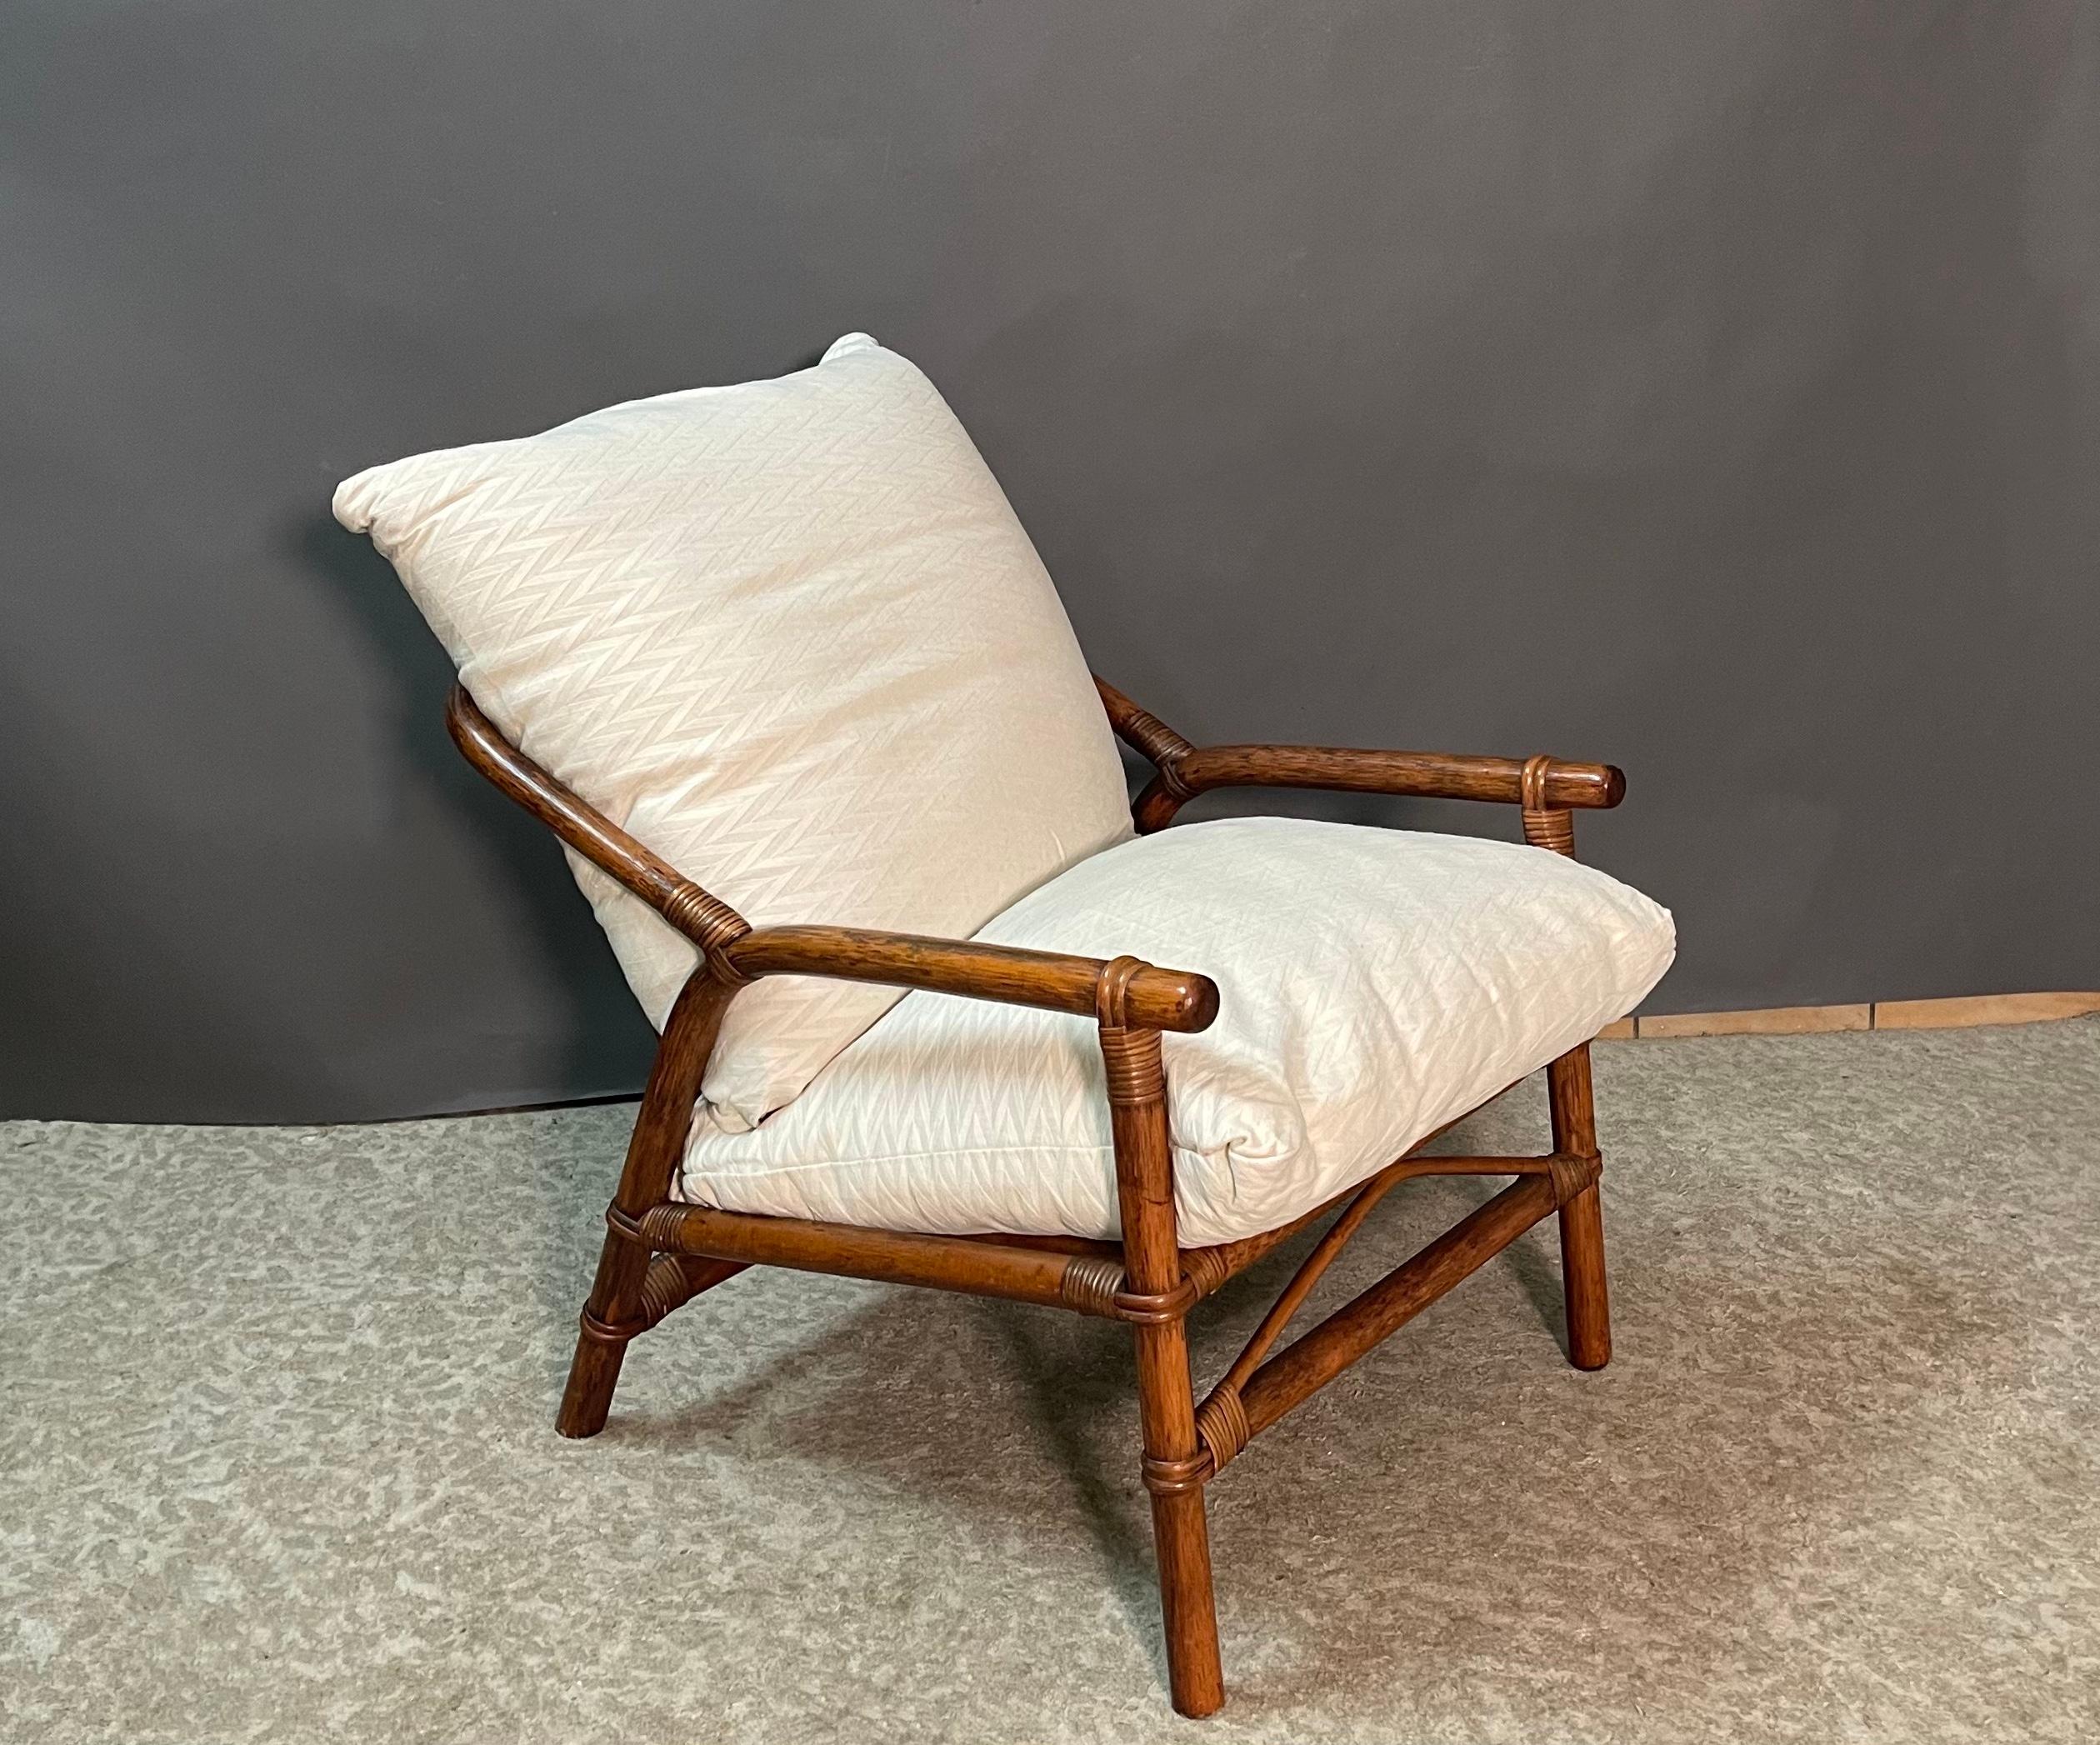 Schönes Paar italienischer Kolonialstil faux Bambus Struktur geflochten mit Rattan Sesseln.
Die Armlehnen gehen fließend in die abgerundete Rückenlehne der Stühle über. 
Ein sehr bequemes Paar Loungesessel aus den 1950er Jahren.
 Tolles Profil,